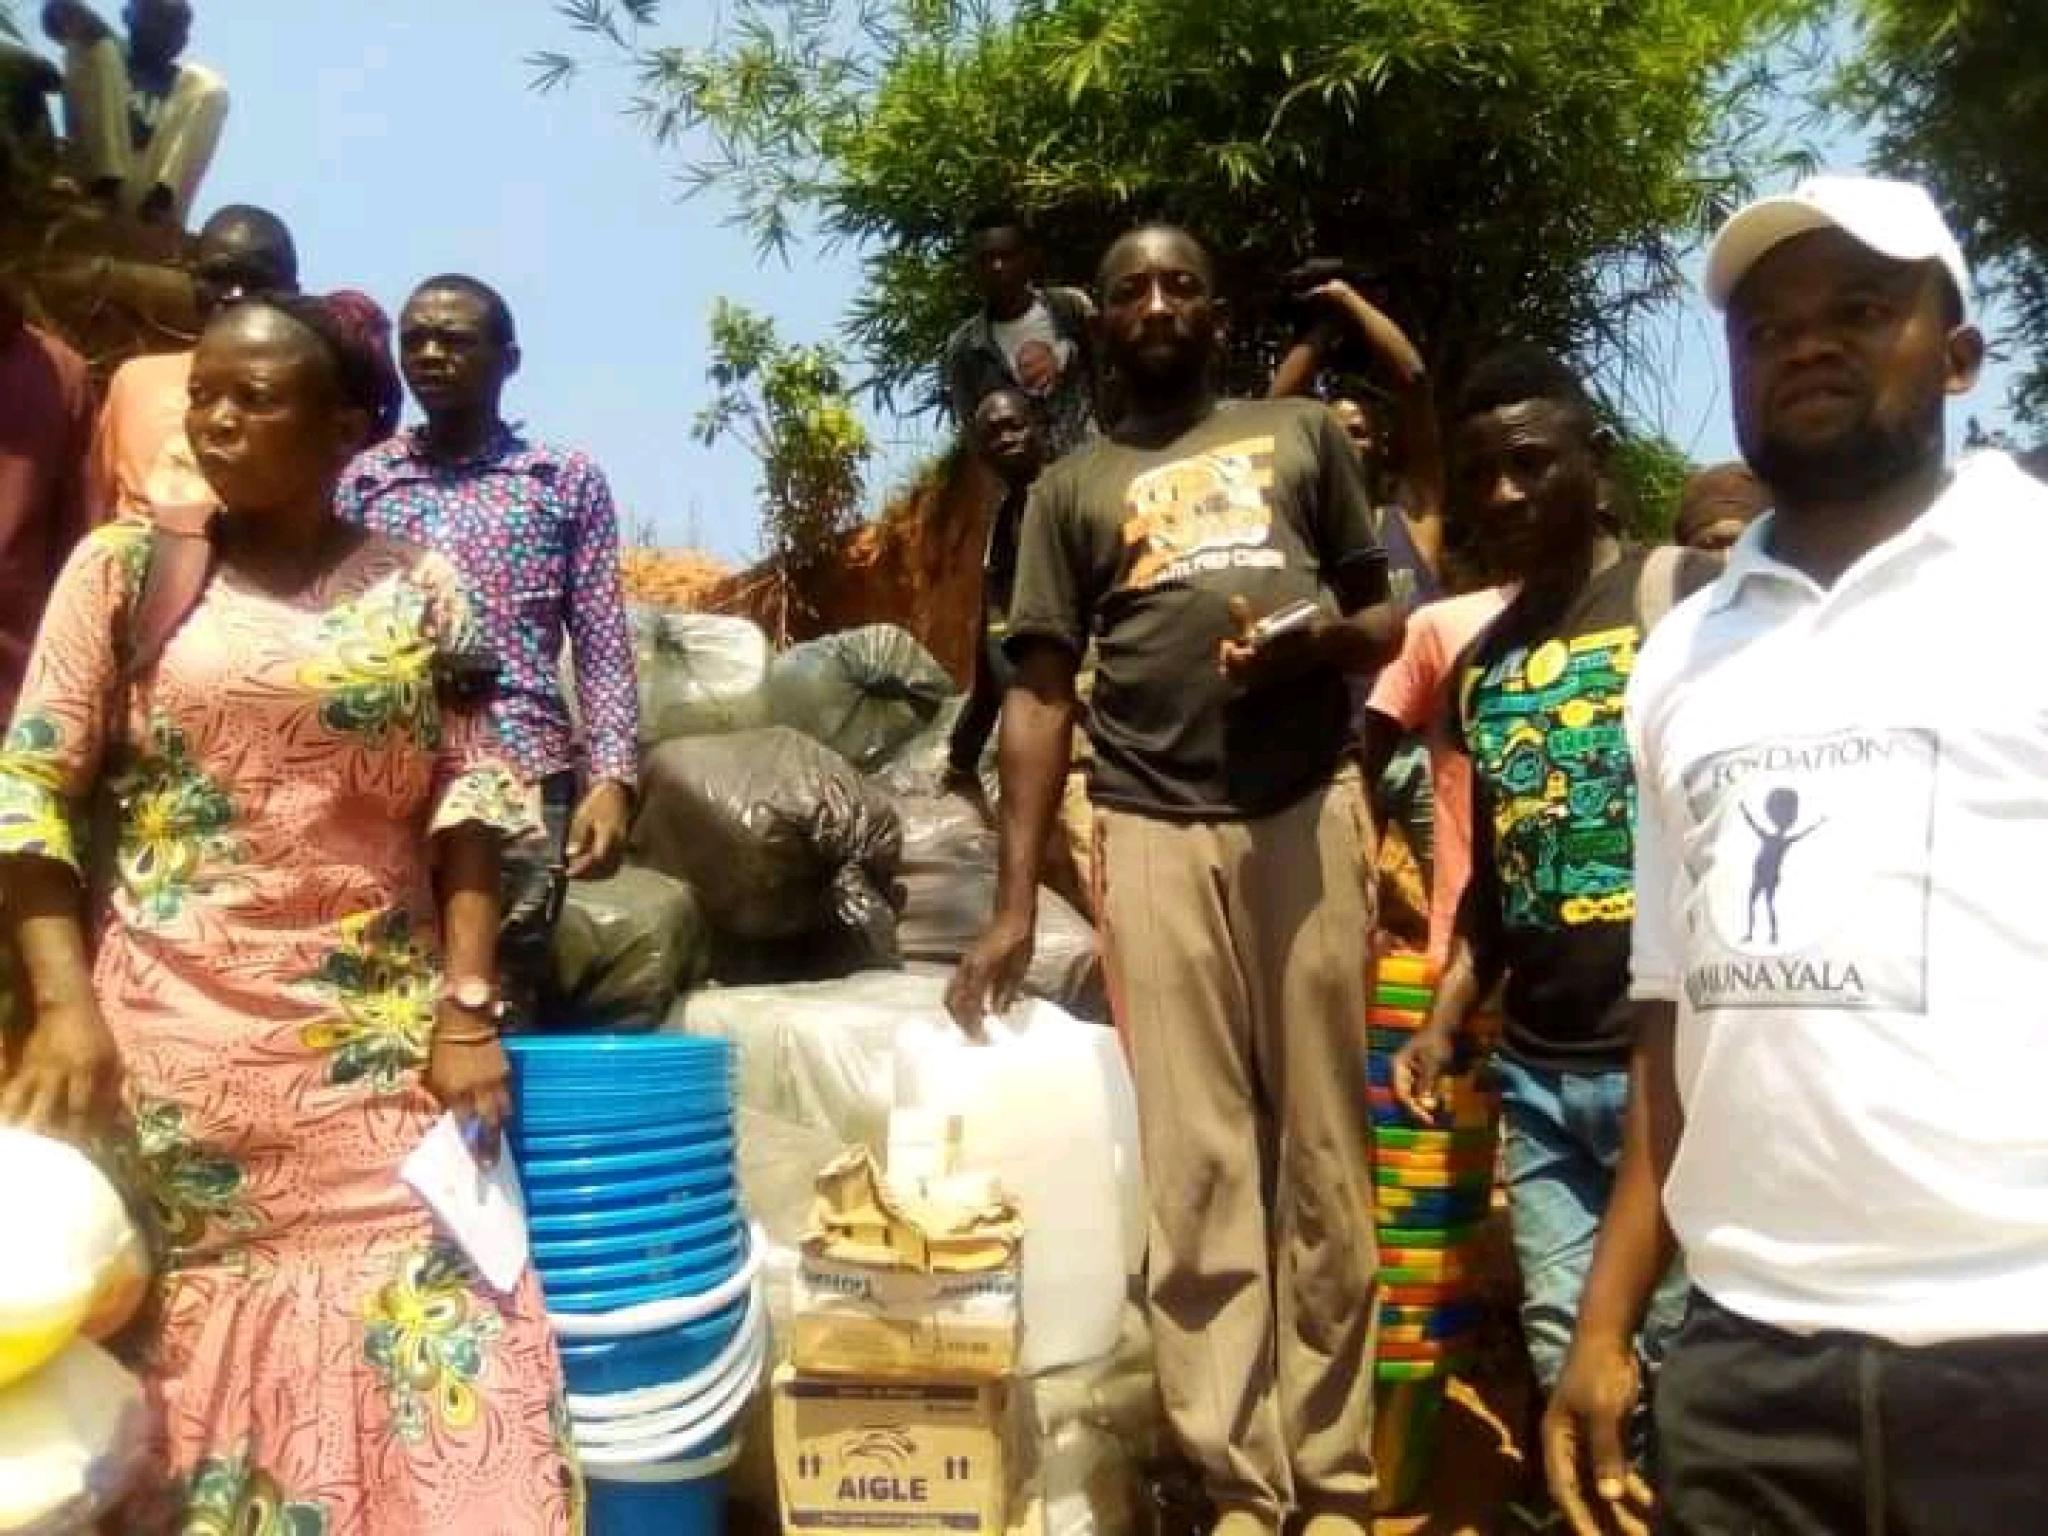 Les vivres destinés à la distribution dans les villages, transportés par les activistes de la fondation Muna yala